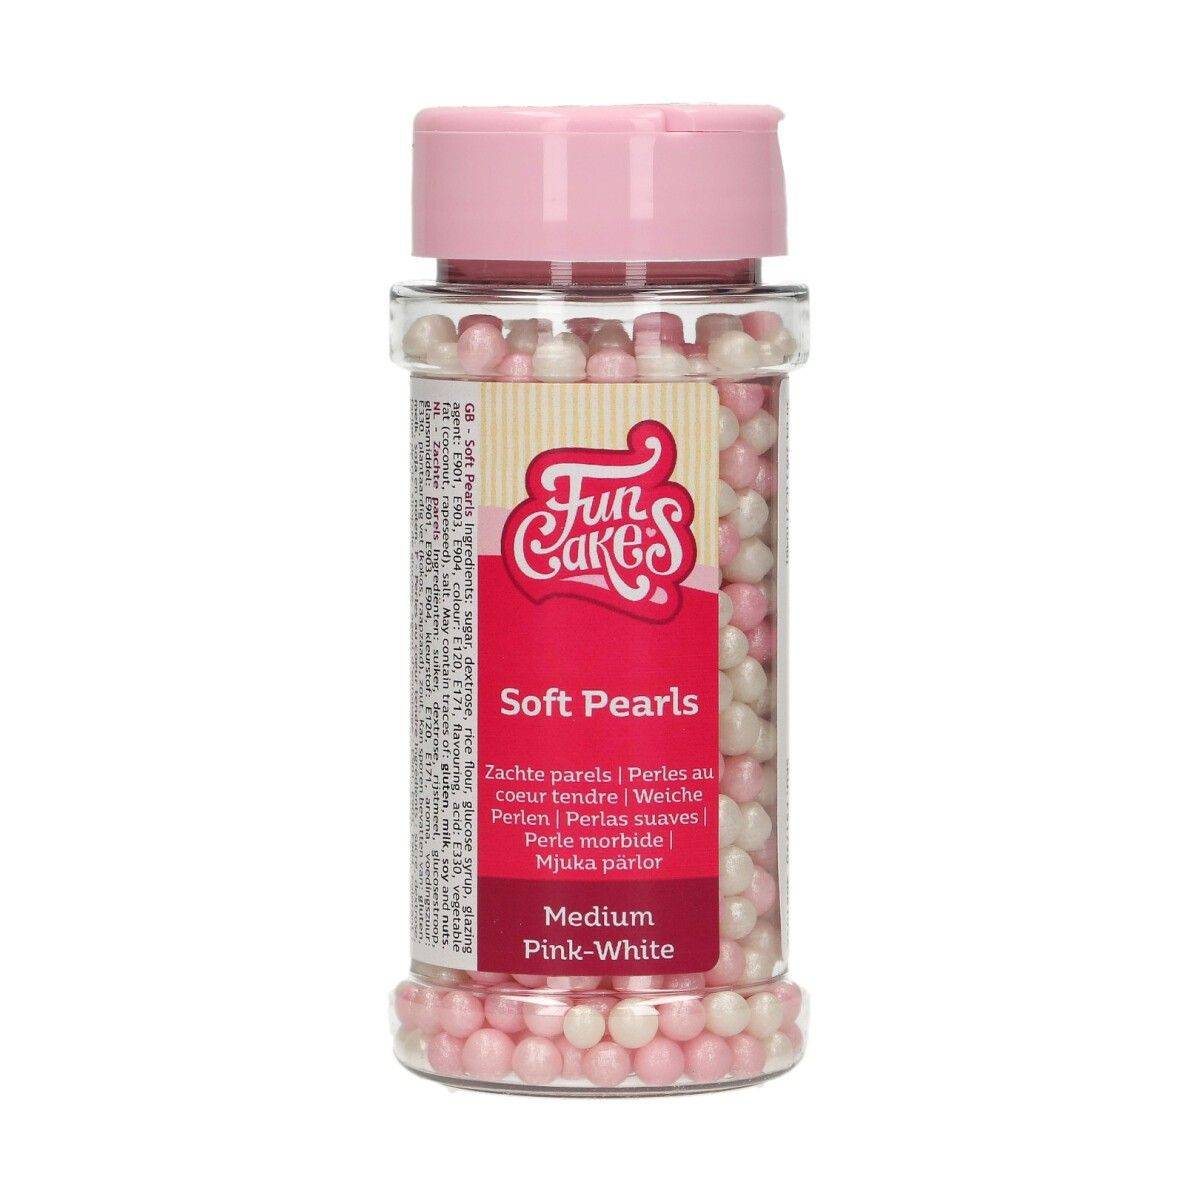 Cukrové dekorace bílo-růžové perly 60g FunCakes